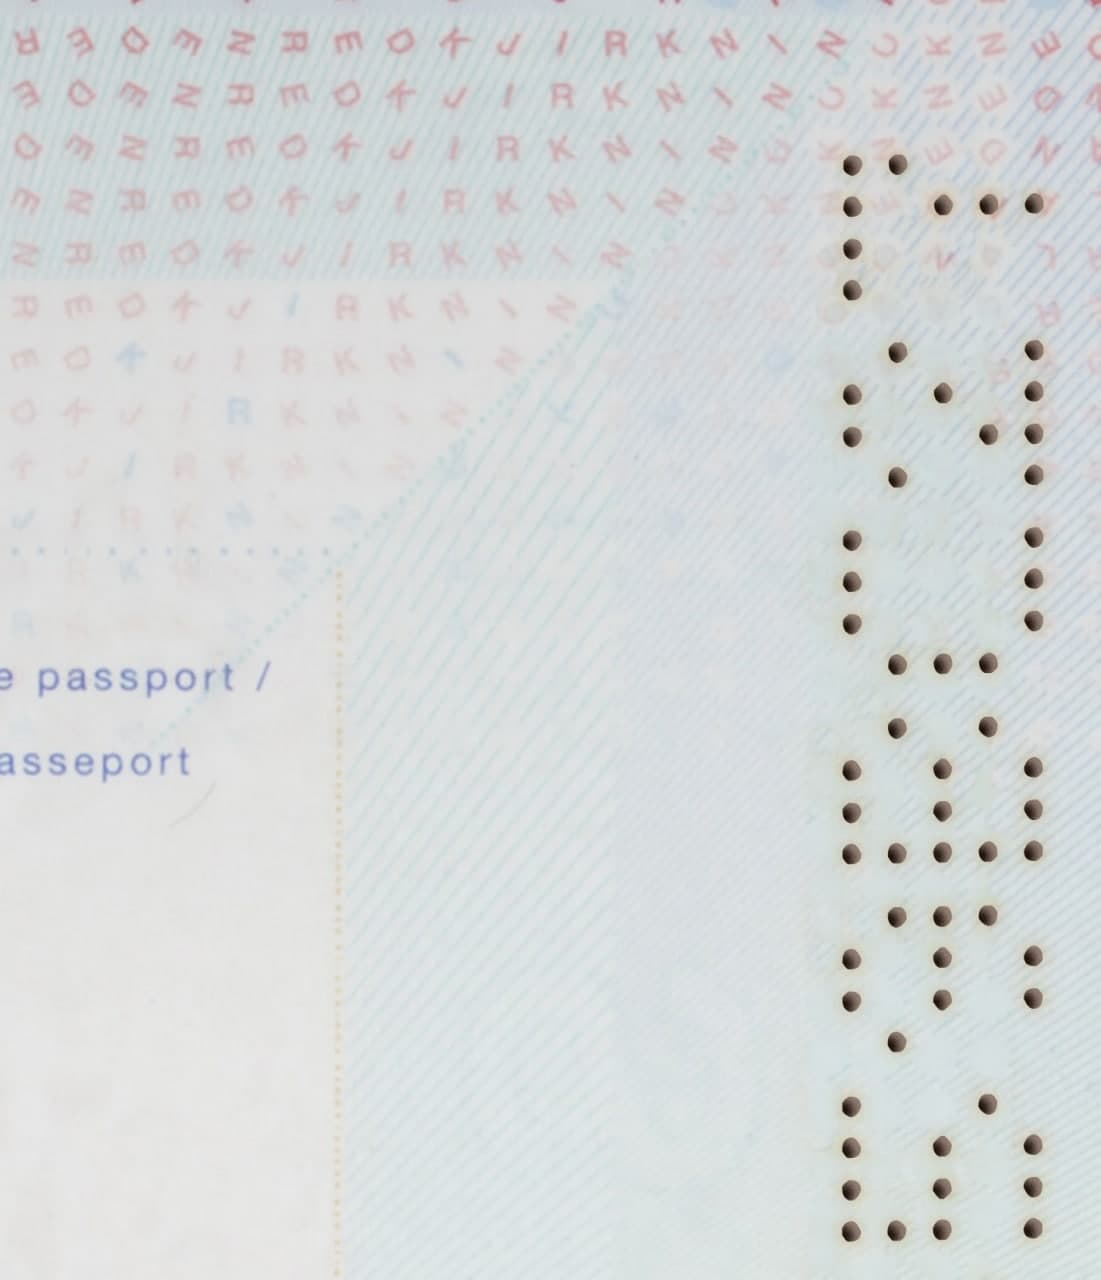 Netherlands Passport-3